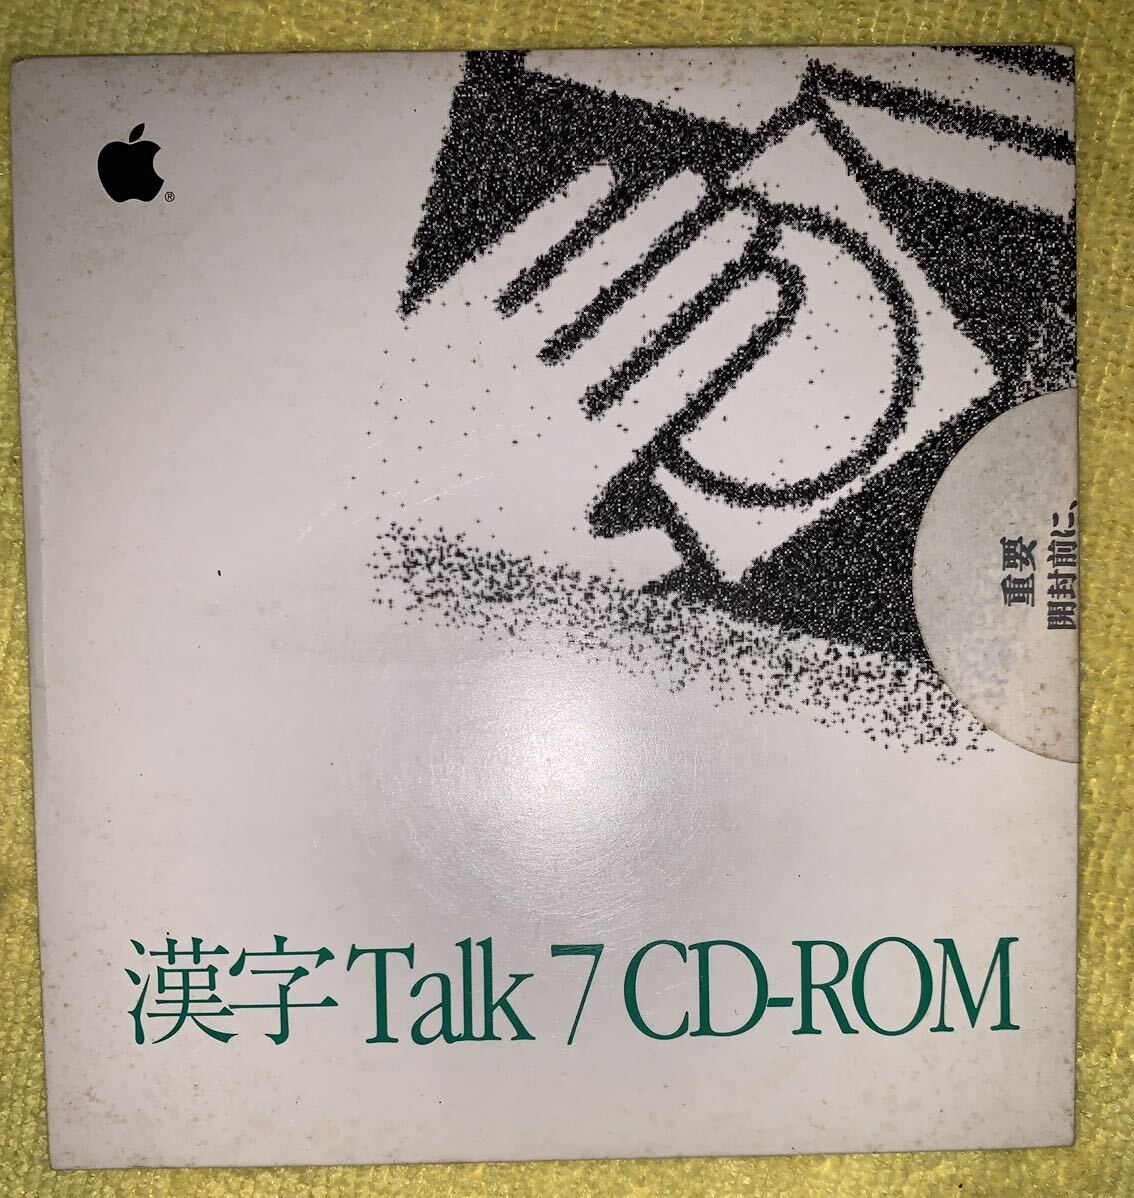 漢字Talk 7 CD-ROM J914-0594-A 未開封品の画像1